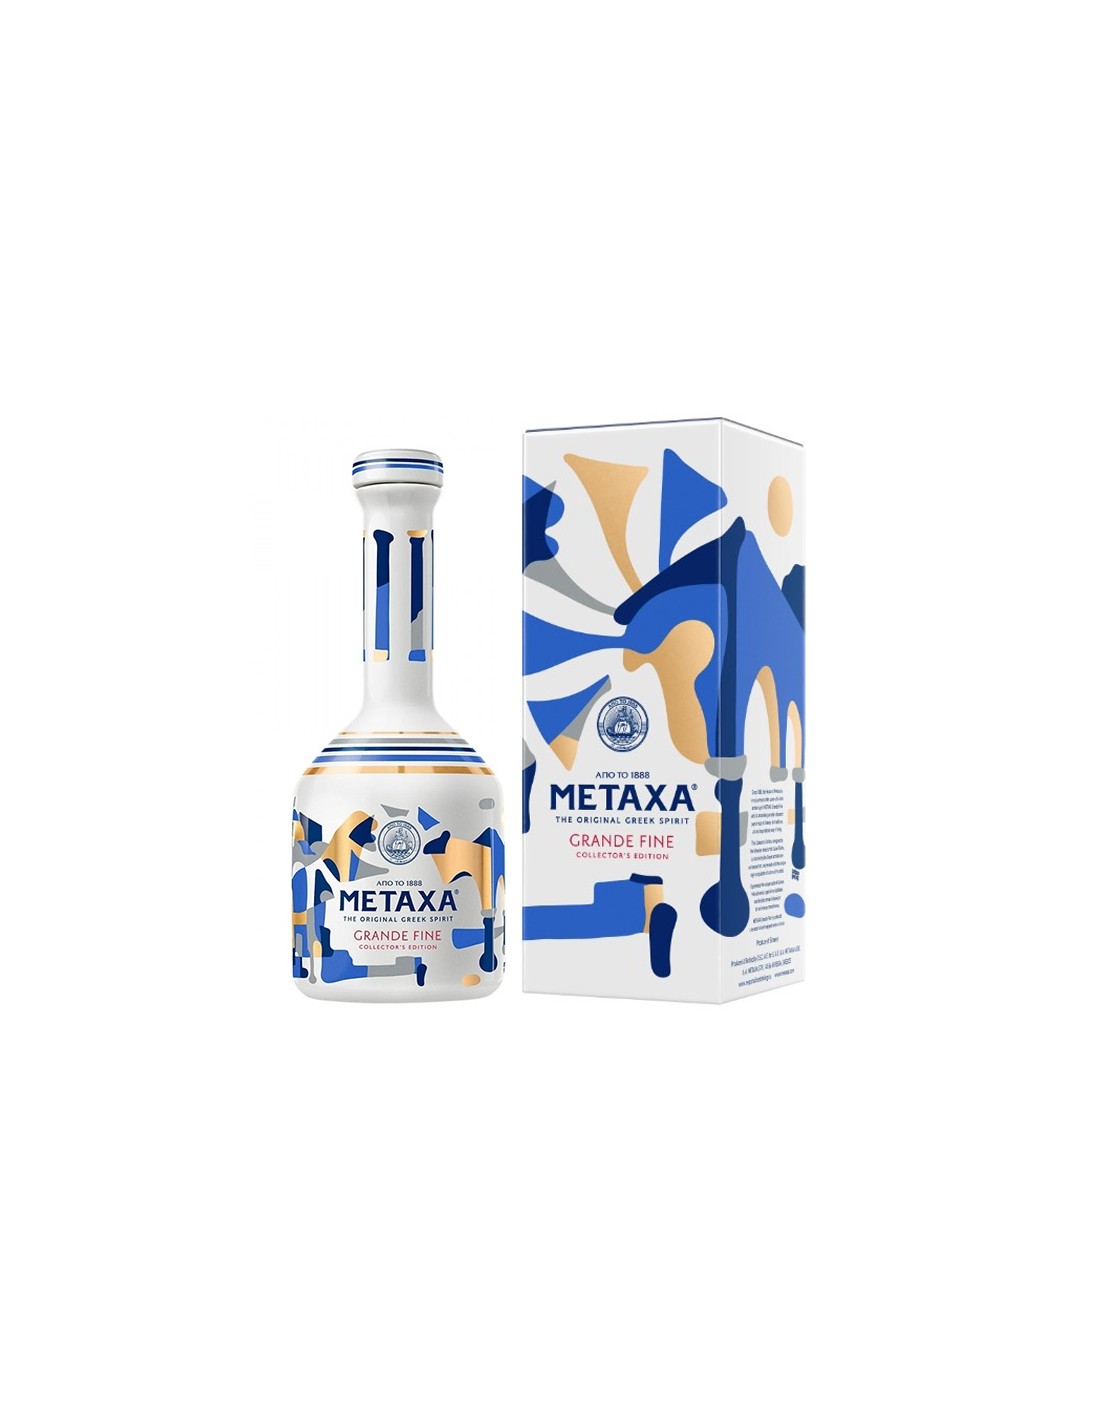 Brandy Metaxa Grand Fine Collectors, 40% alc., 0.7L, Grecia alcooldiscount.ro